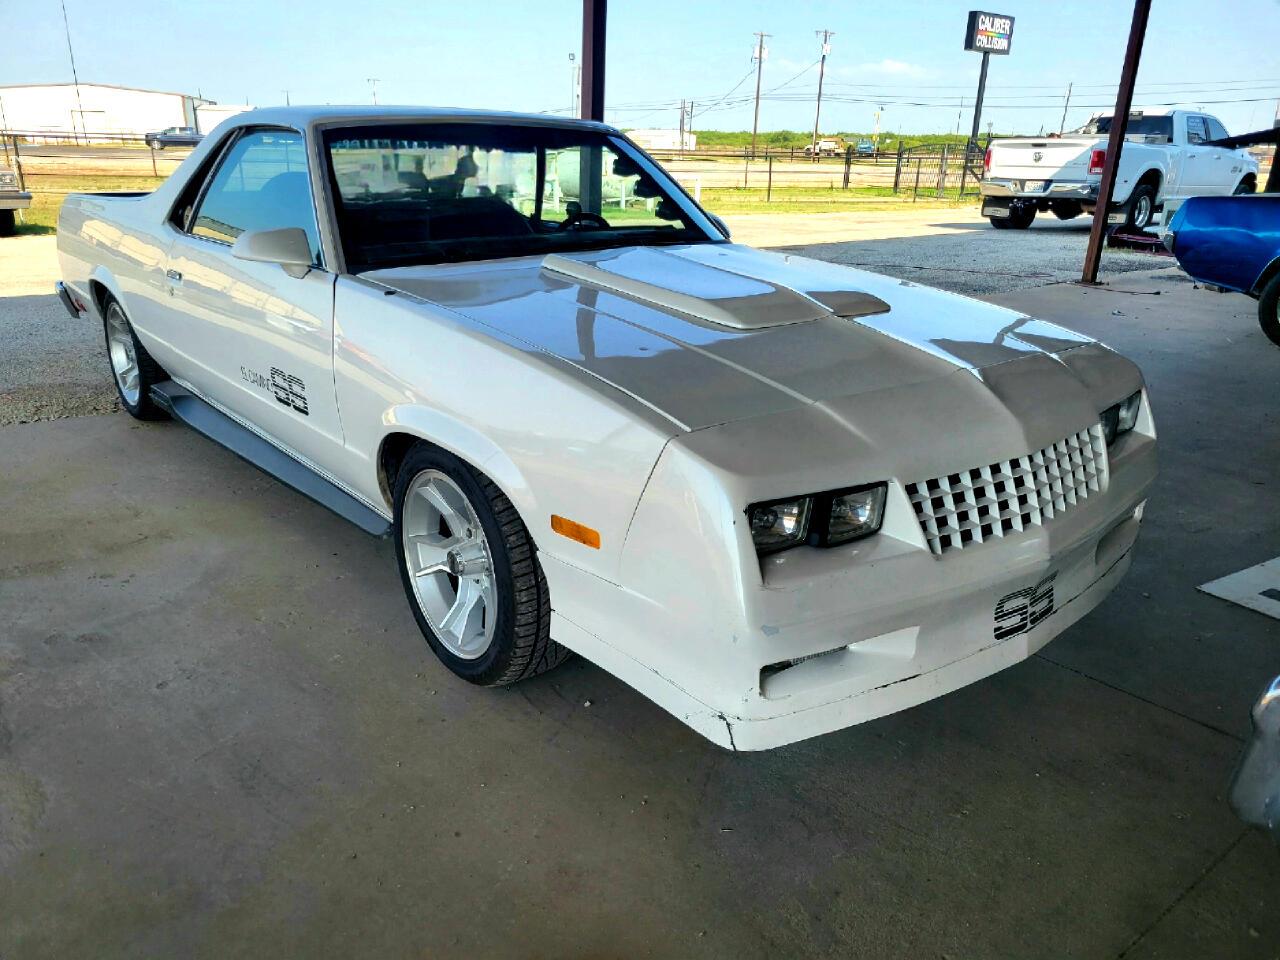 For Sale: 1986 Chevrolet El Camino in Wichita Falls, Texas for sale in Wichita Falls, TX